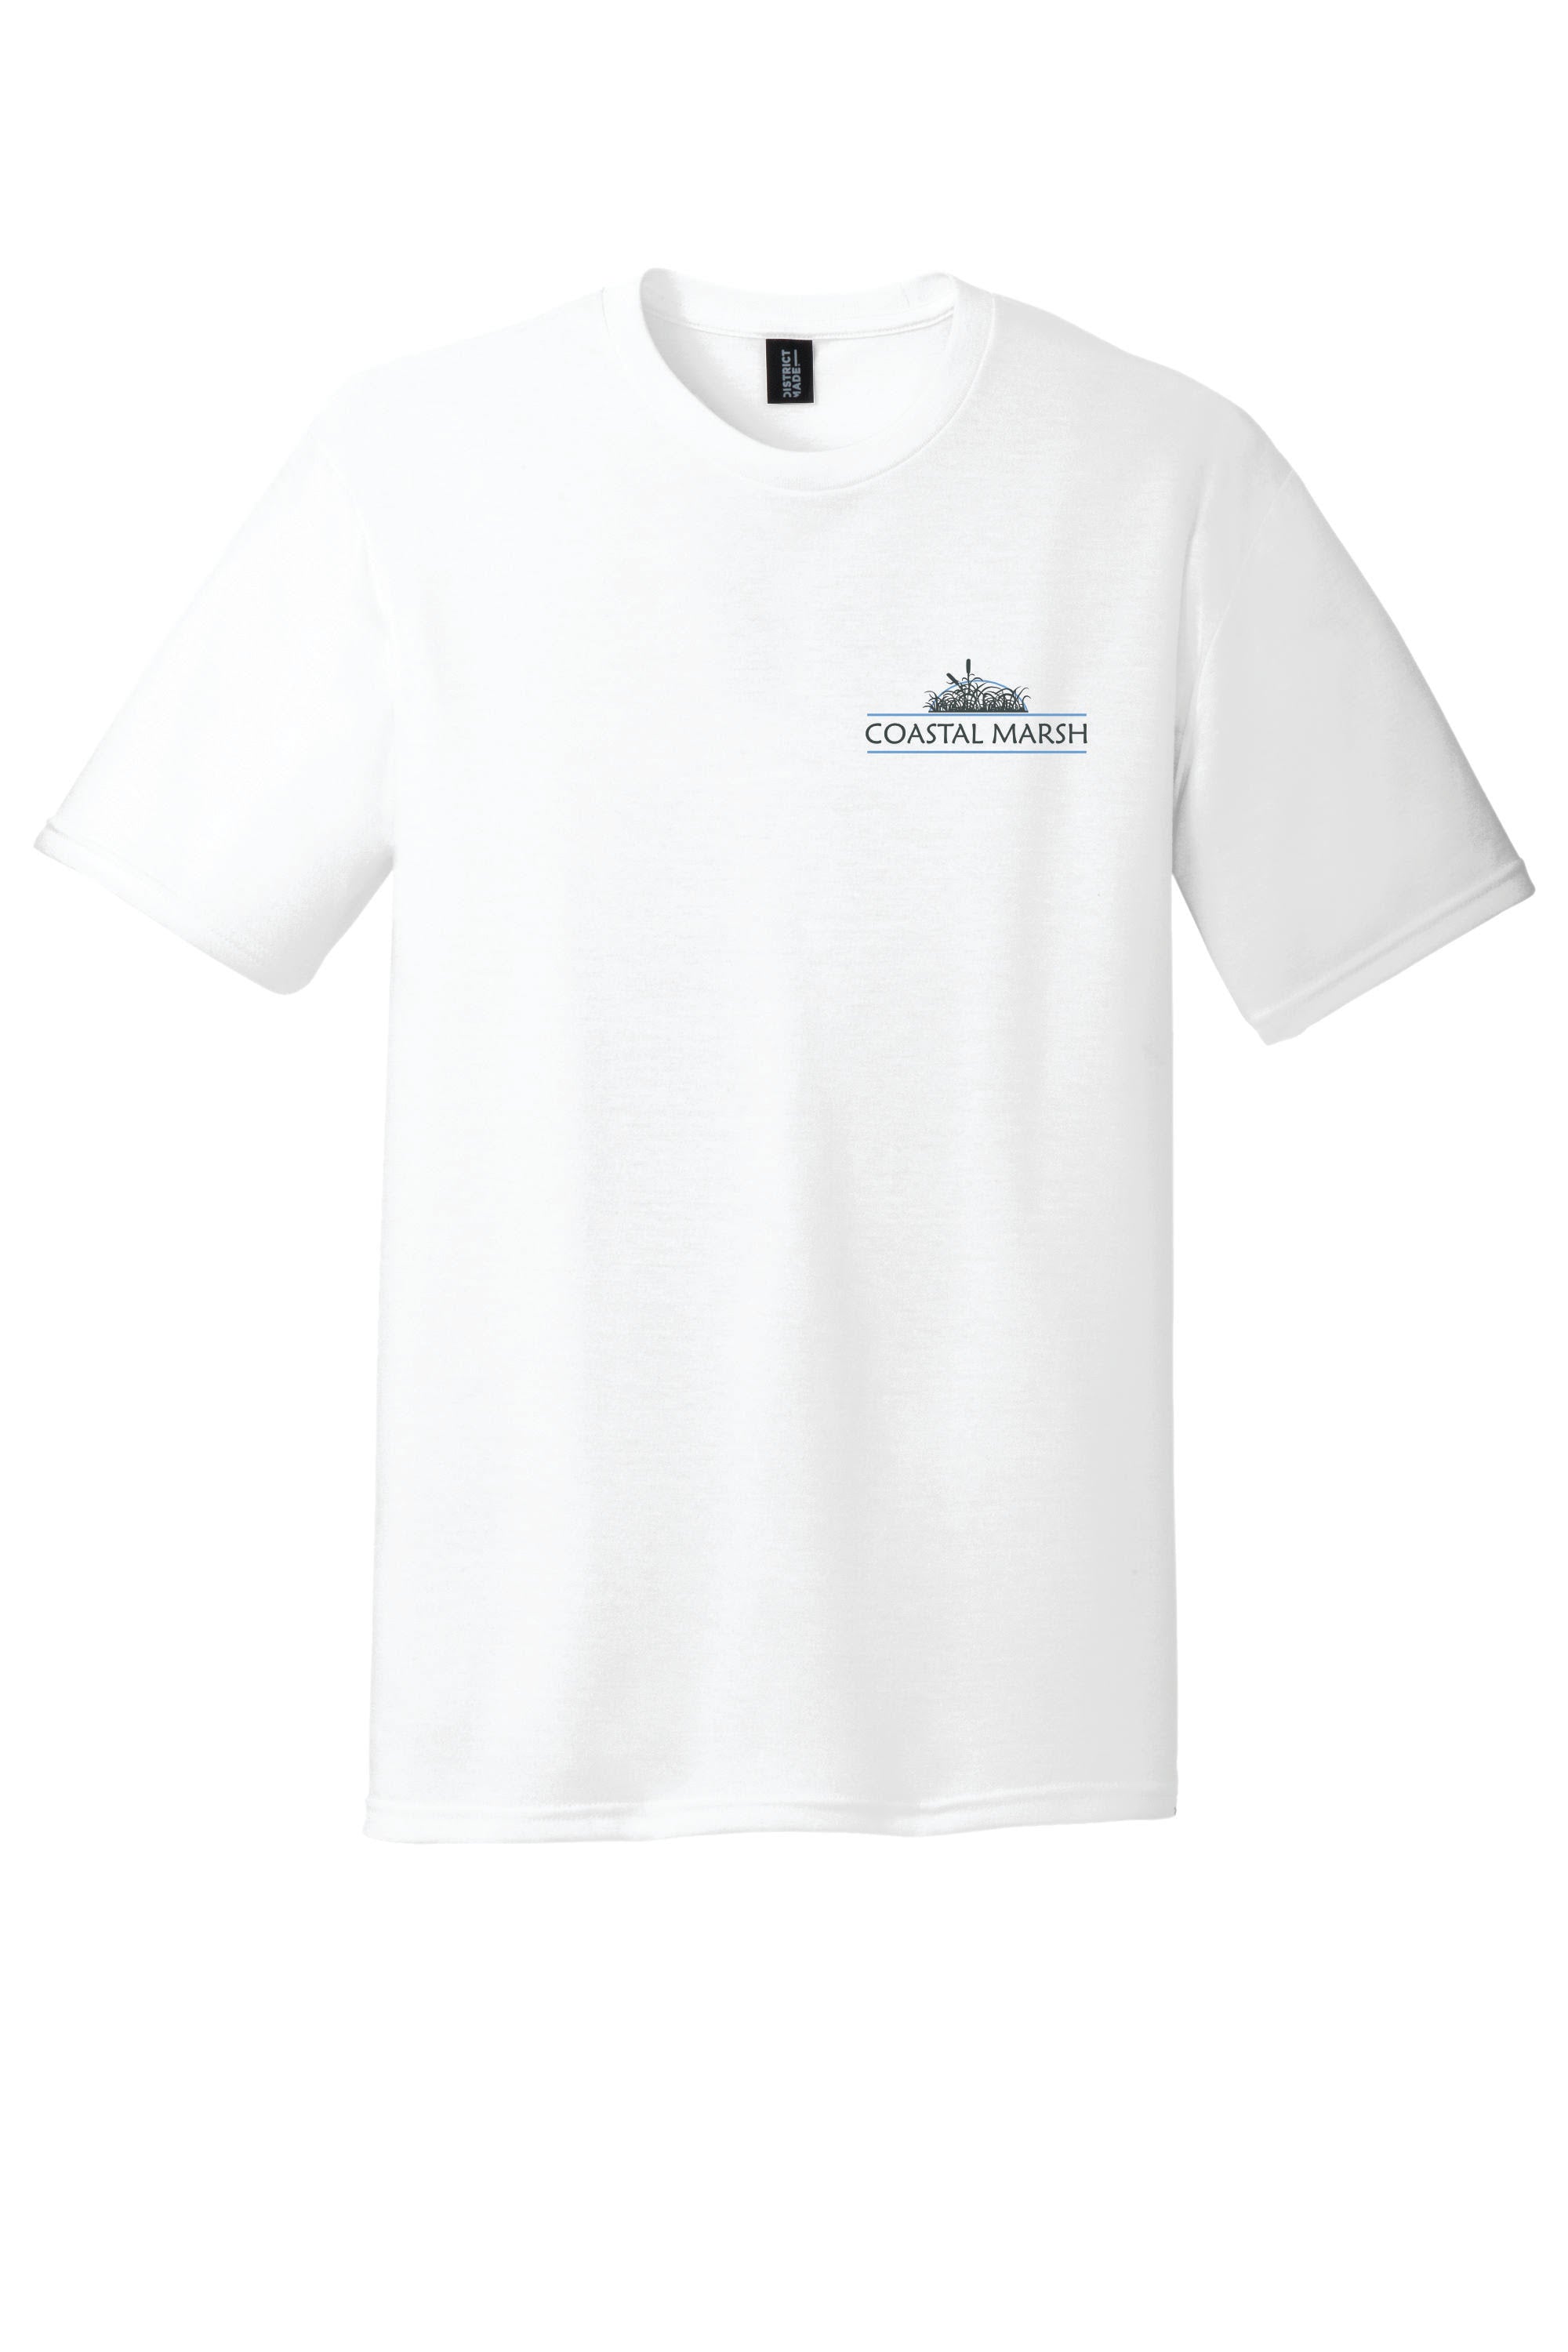 coastal marsh 50/50 blend short sleeve t-shirt – Coastal Marsh